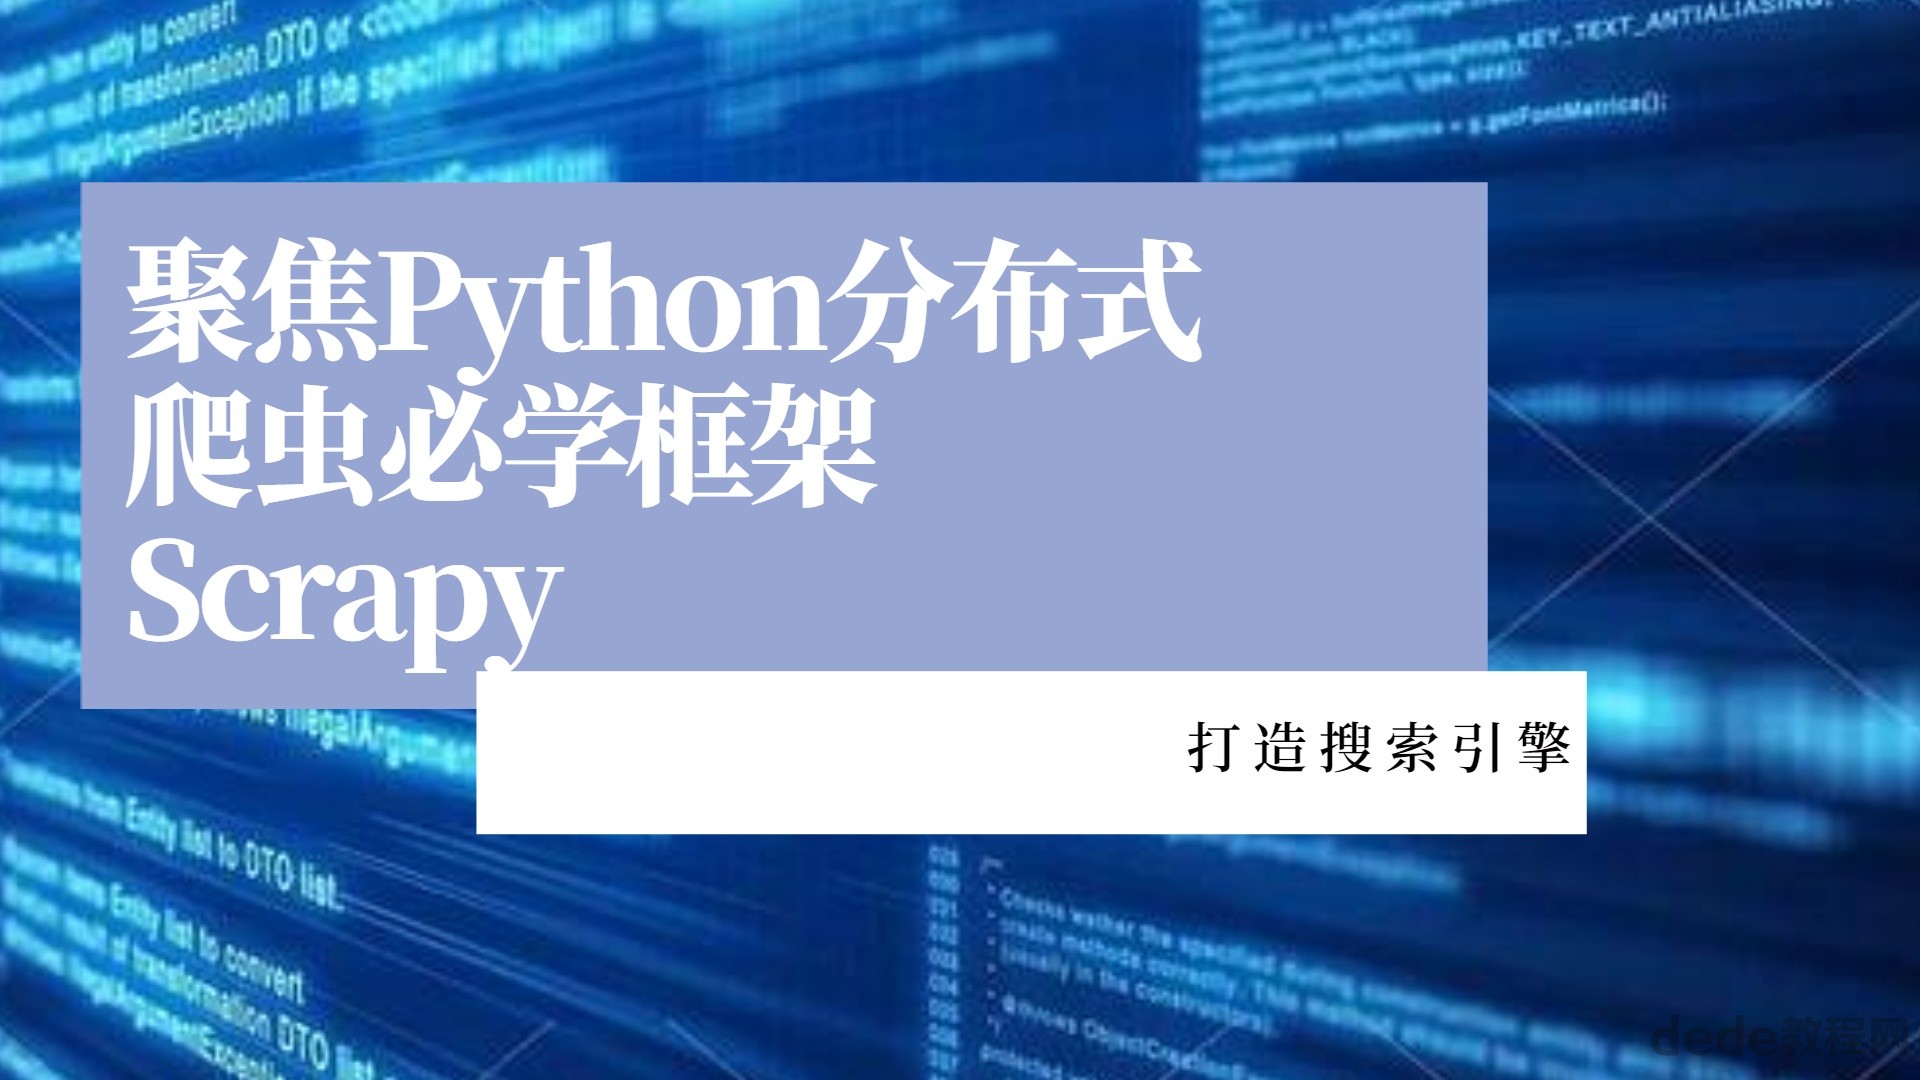 百度网盘聚焦Python分布式爬虫必学框架Scrapy 打造搜索引擎